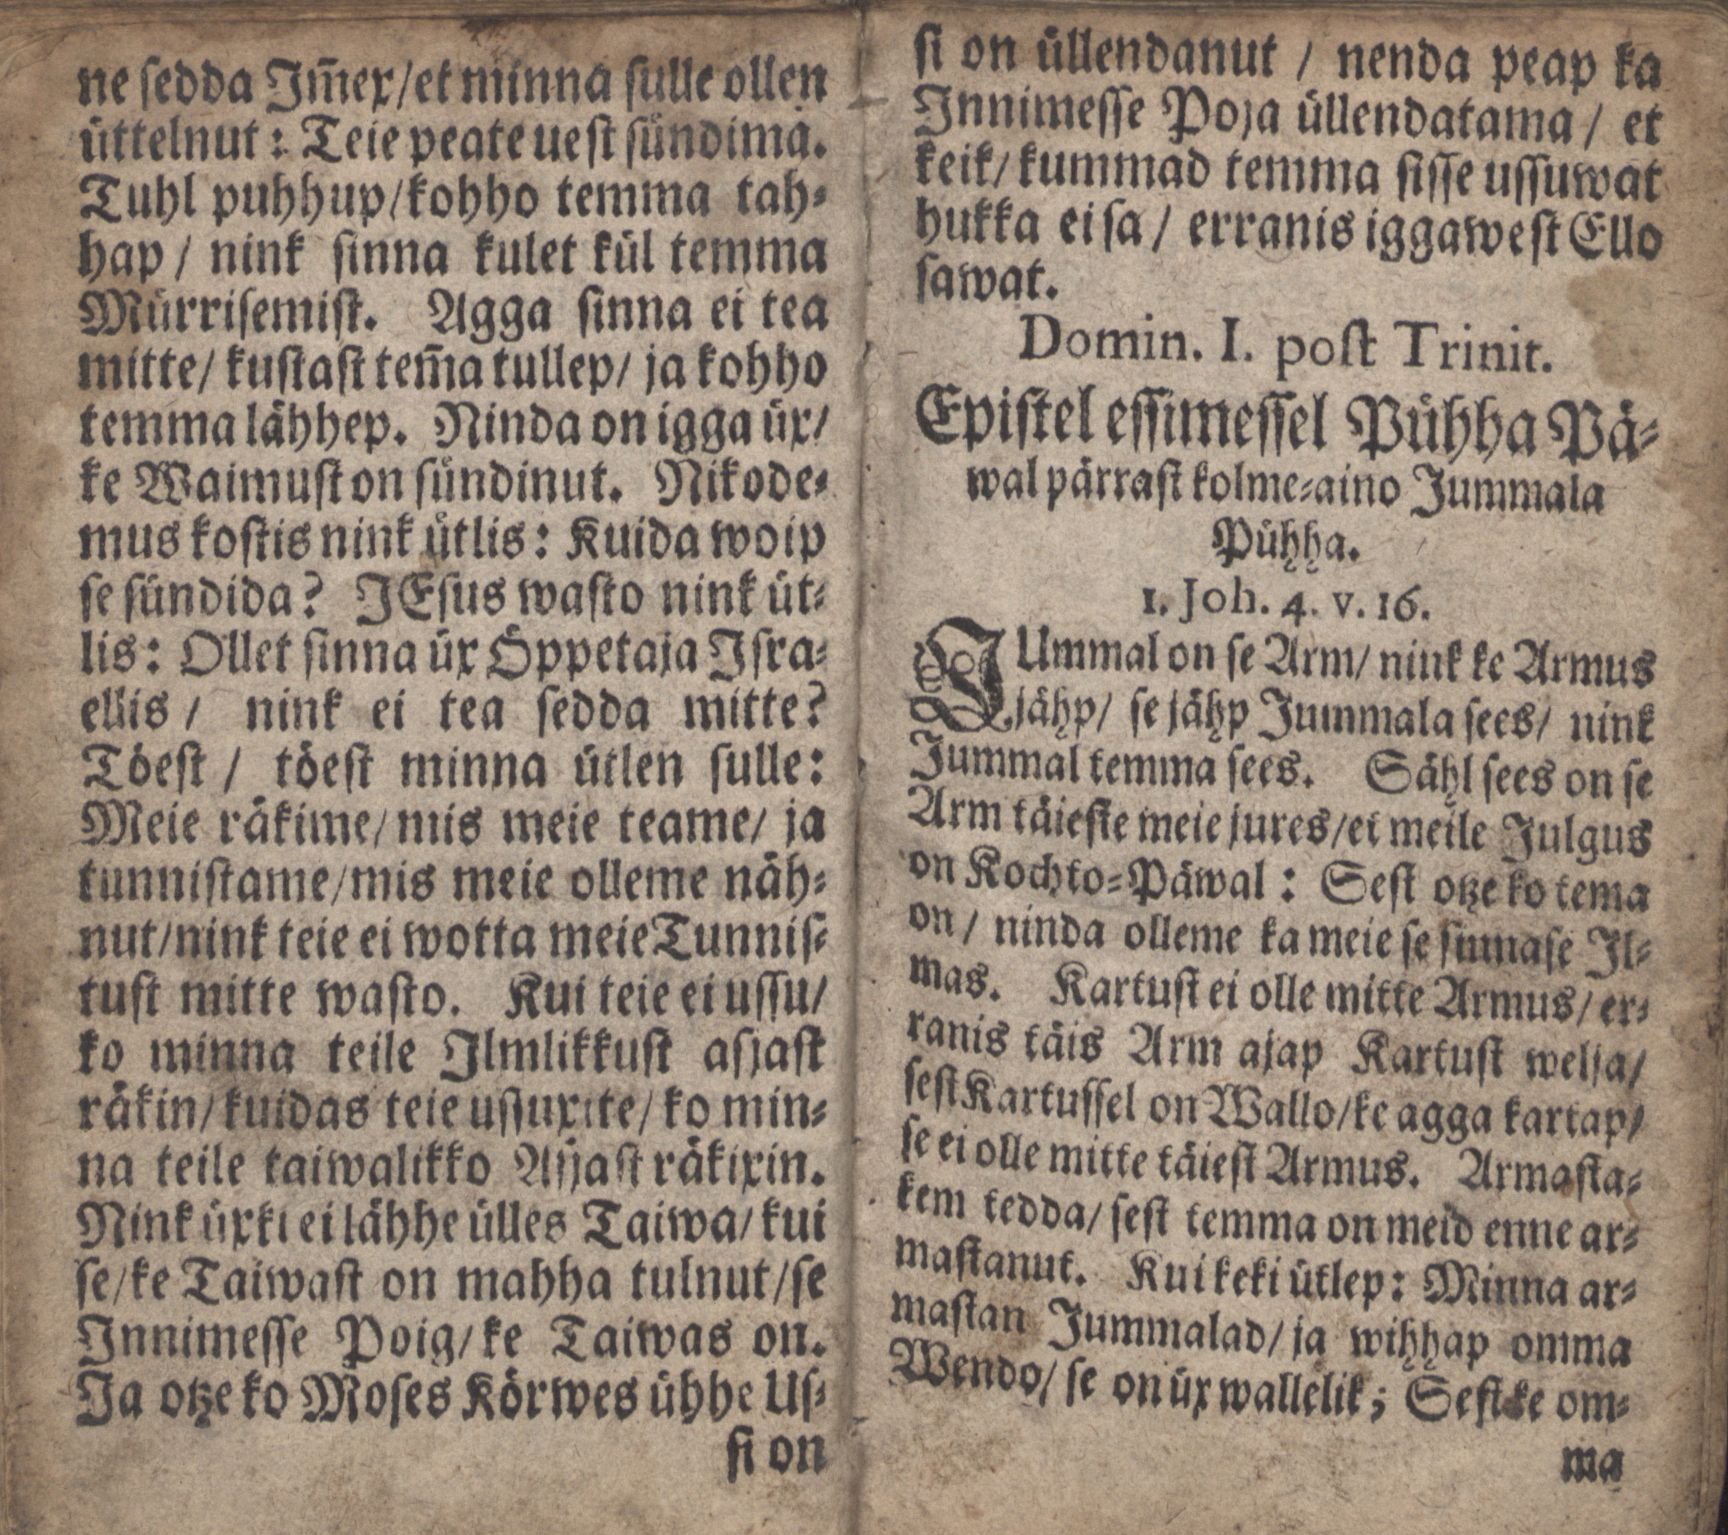 Ewangeliummit Nink Epistlit (1700) | 57. Haupttext